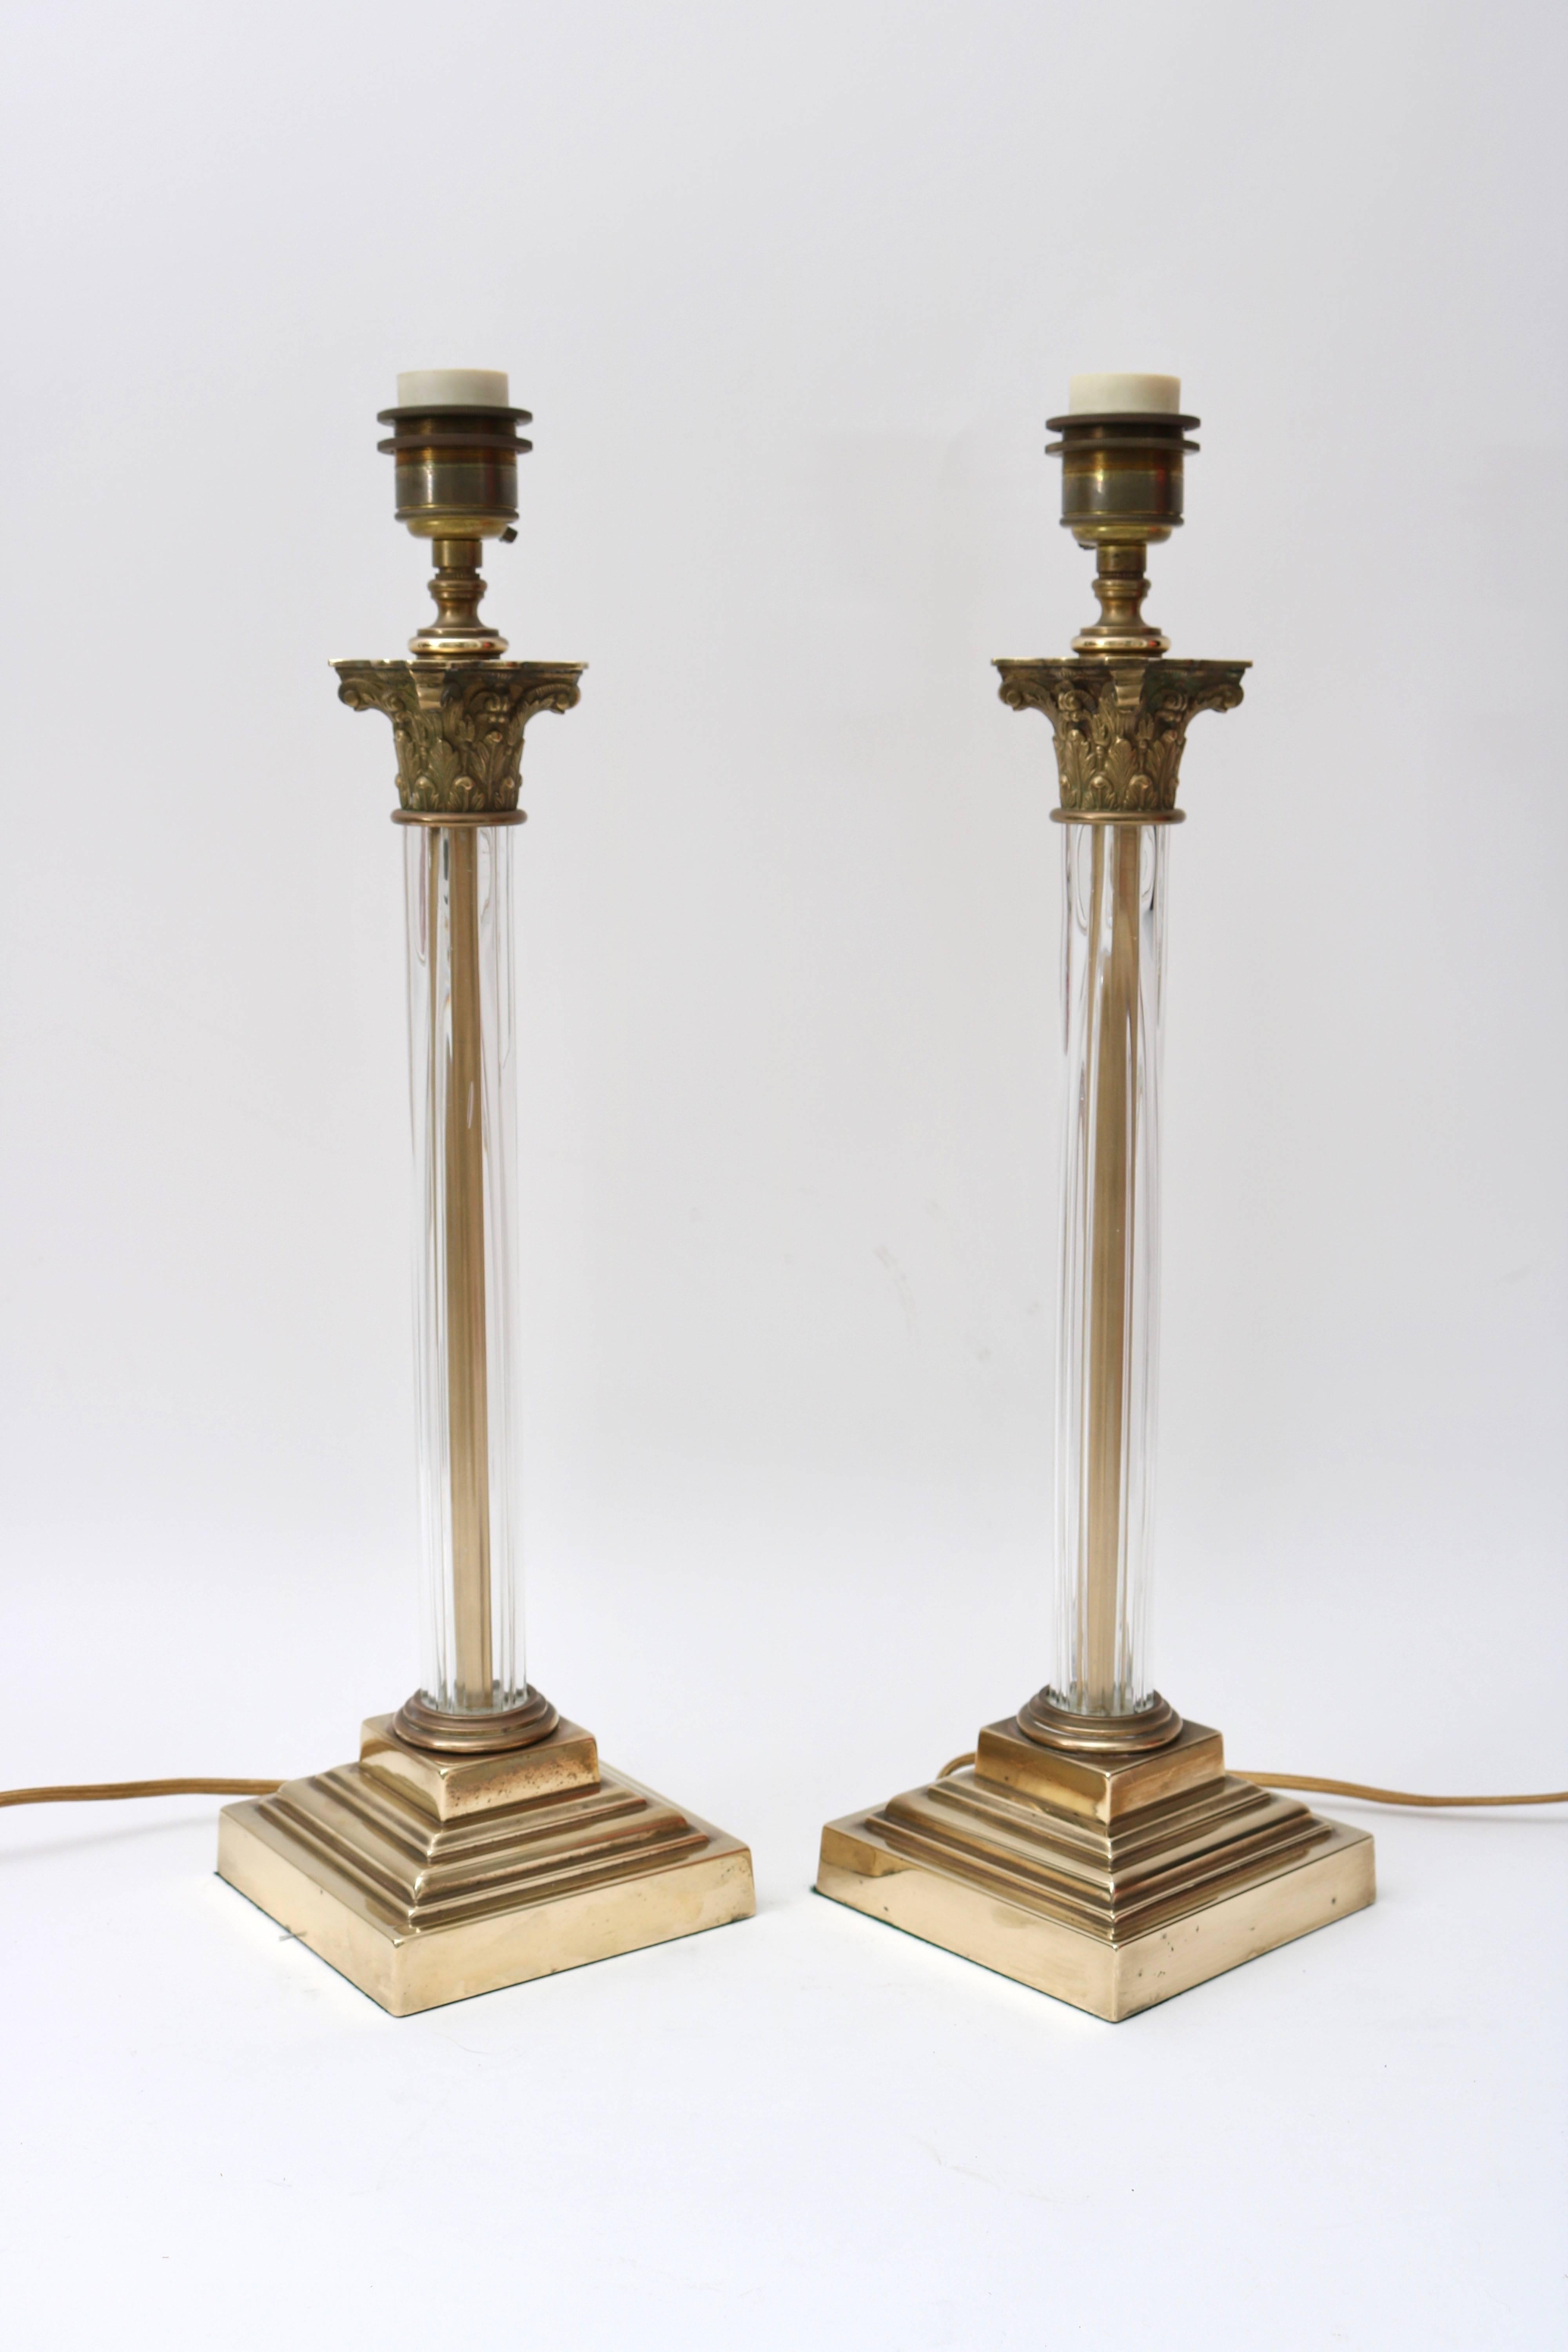 Cette paire de lampes de table à chapiteau corinthien en bronze, en forme de colonne, a été récemment restaurée avec un nouveau câblage et un polissage. 
